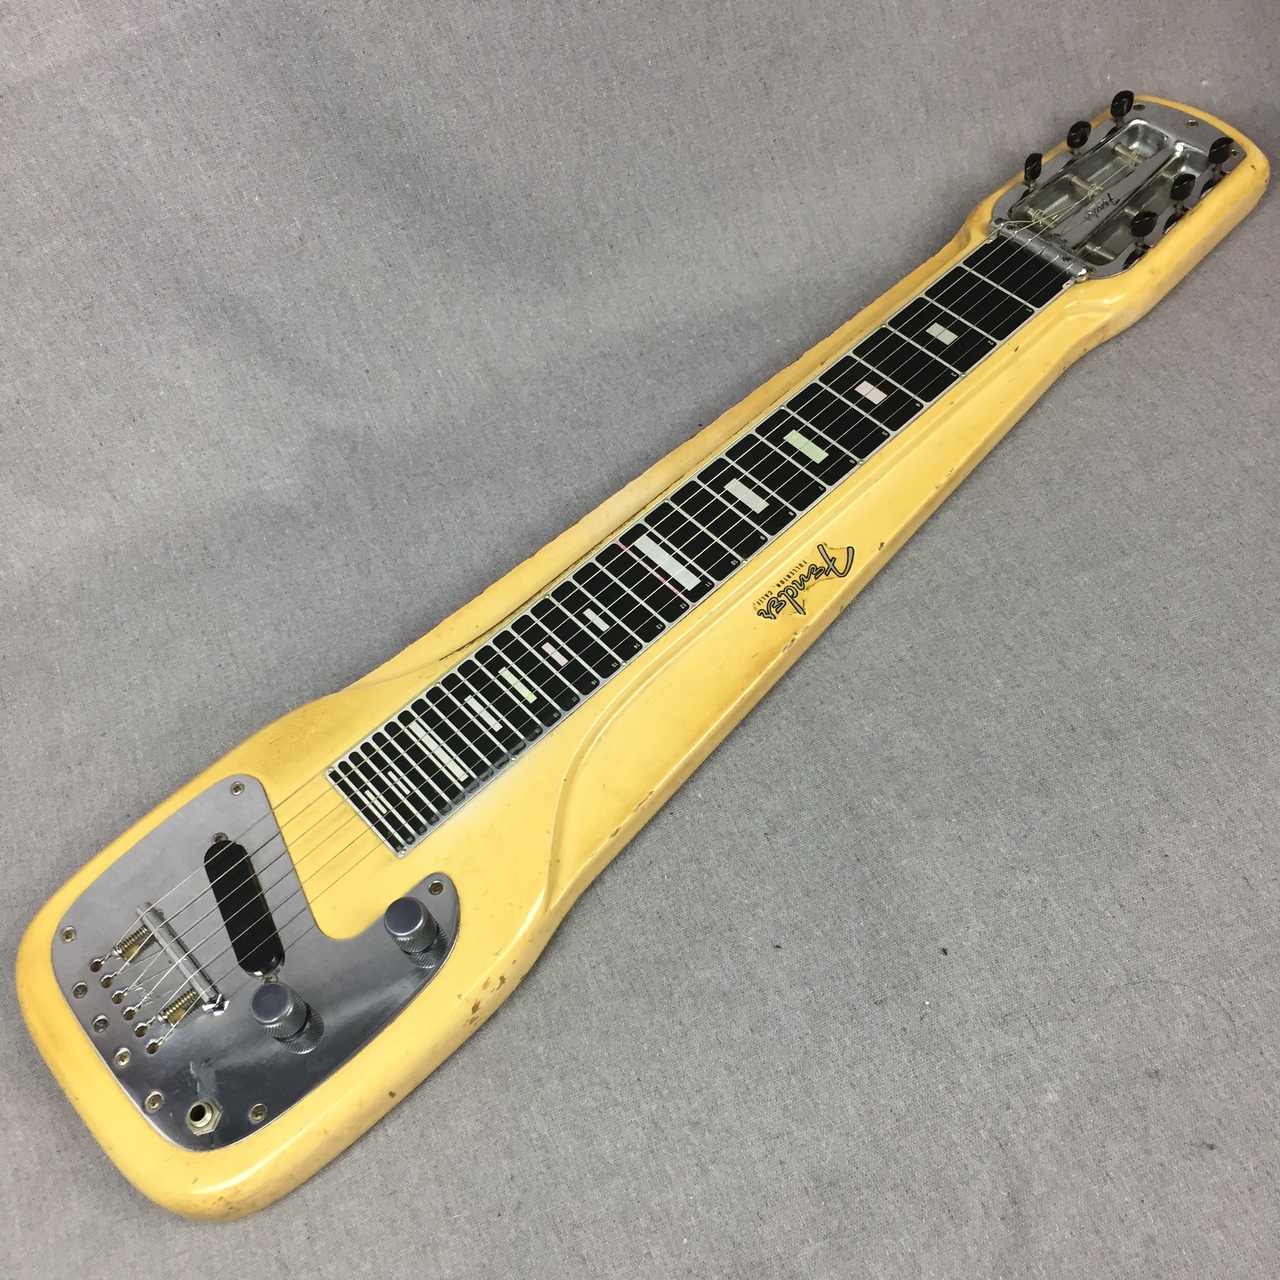 ラップスチールギター - 愛知県の楽器